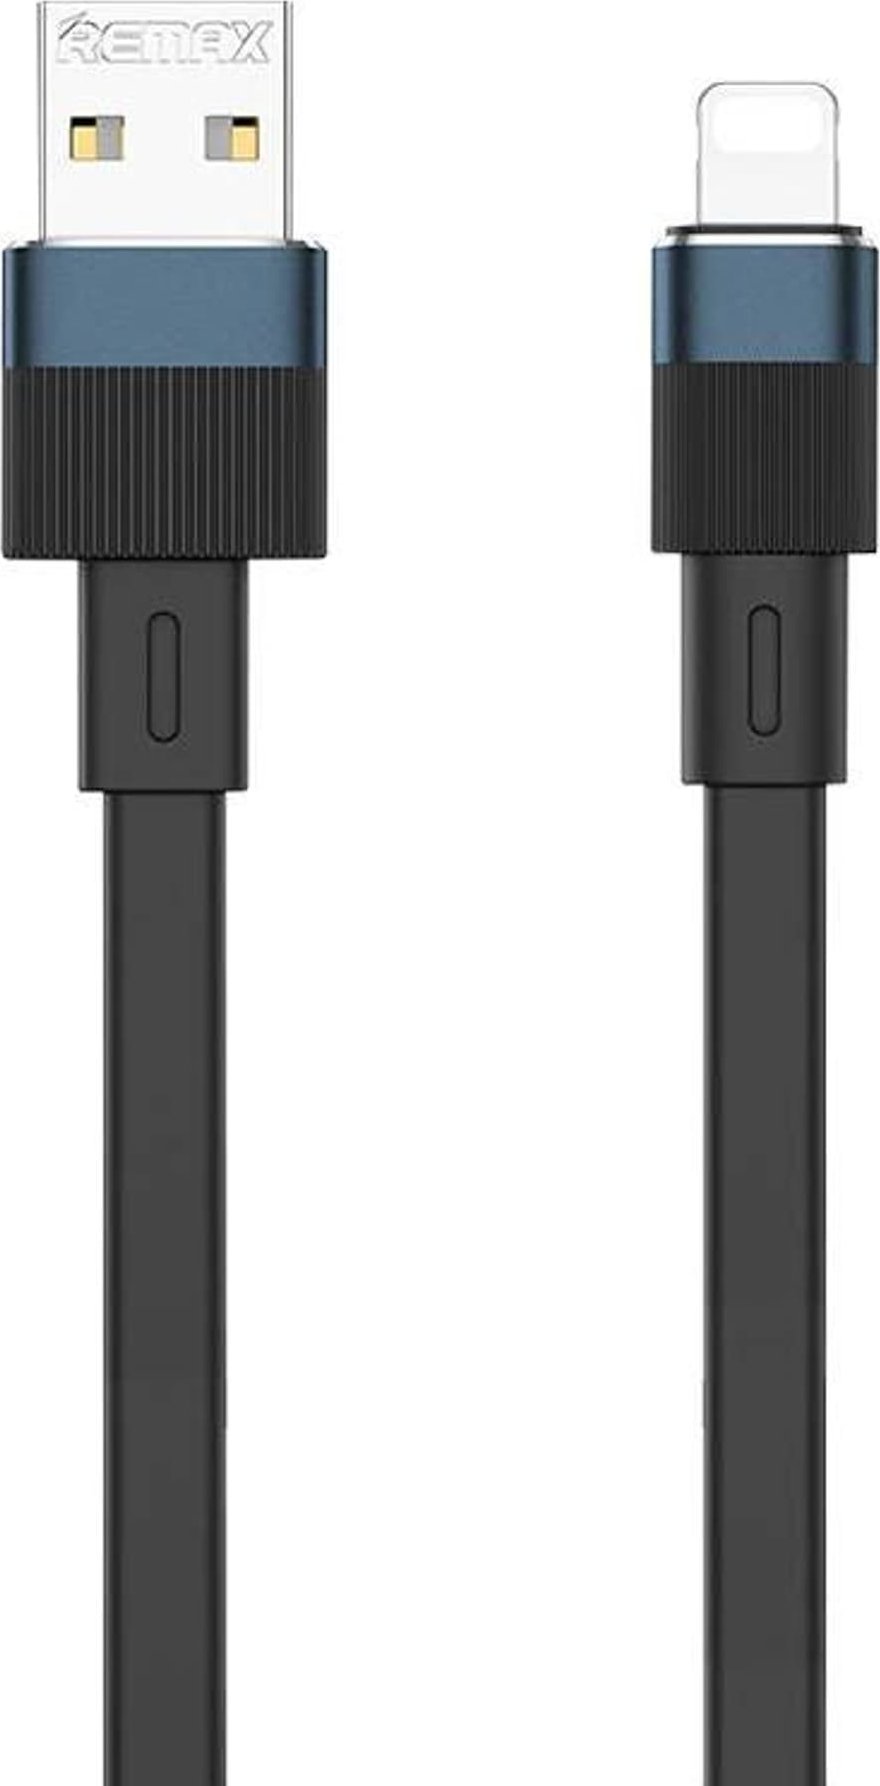 Cablu USB Remax Cablu USB Remax Flushing la Lightning, RC-C001, 1m, (negru)